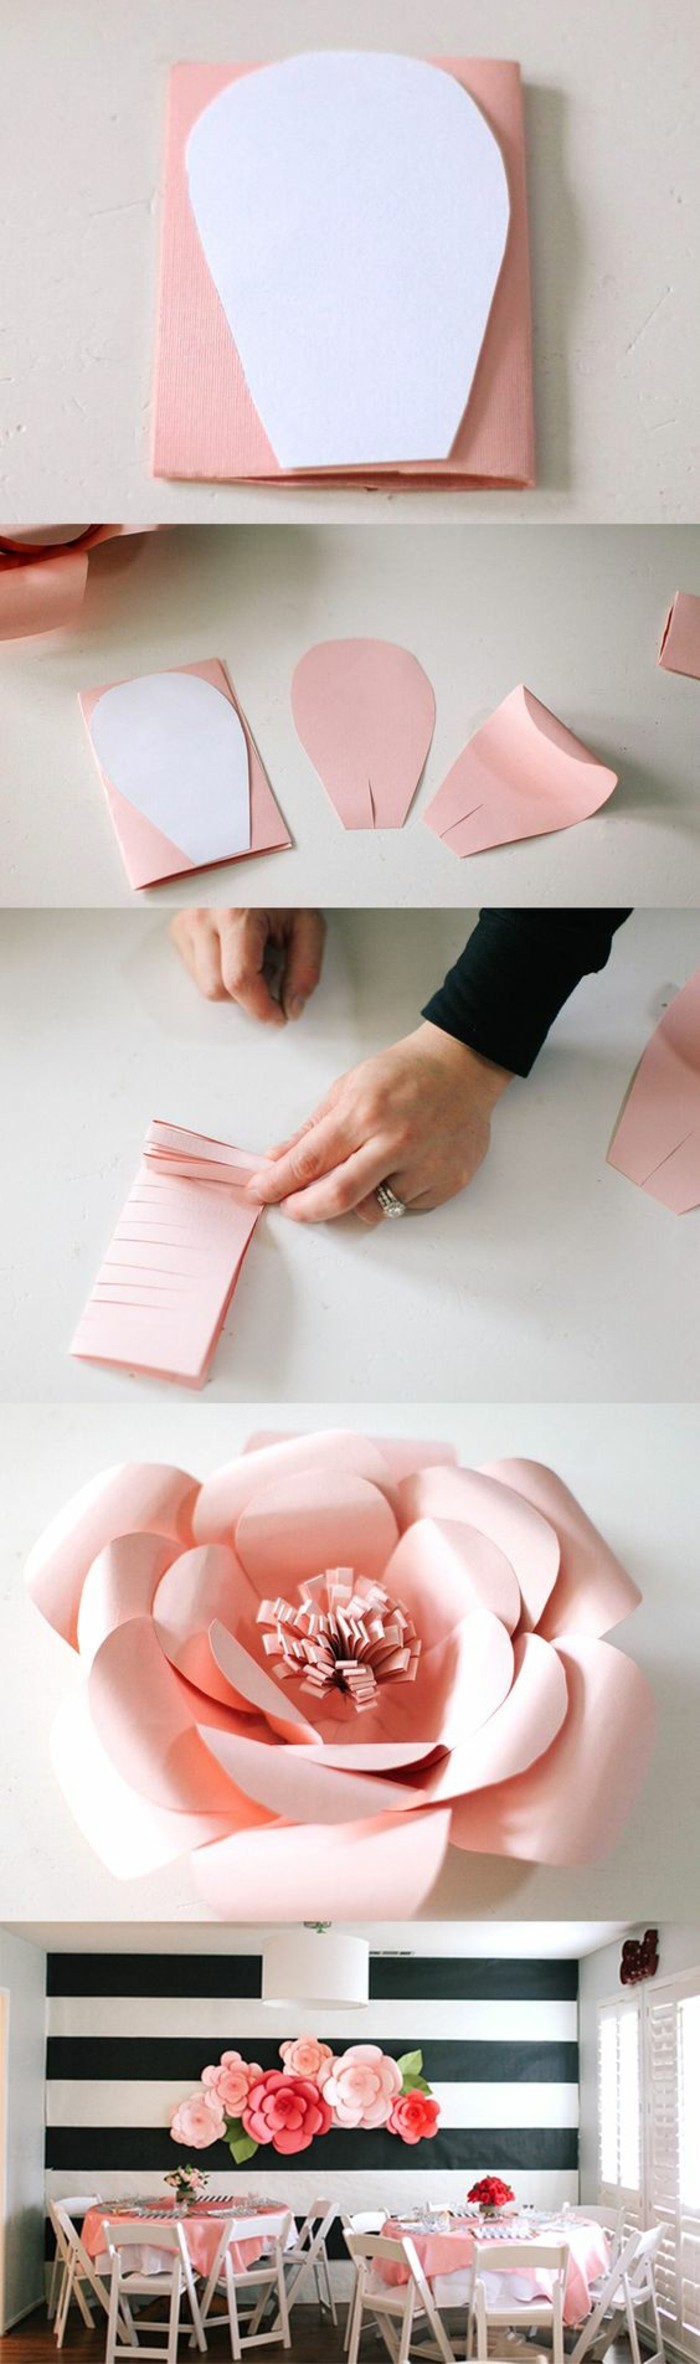 بنفسك صنع 2-wanddeko papier- جعل fruhlingdeko-bastaln-rosan-العبث،